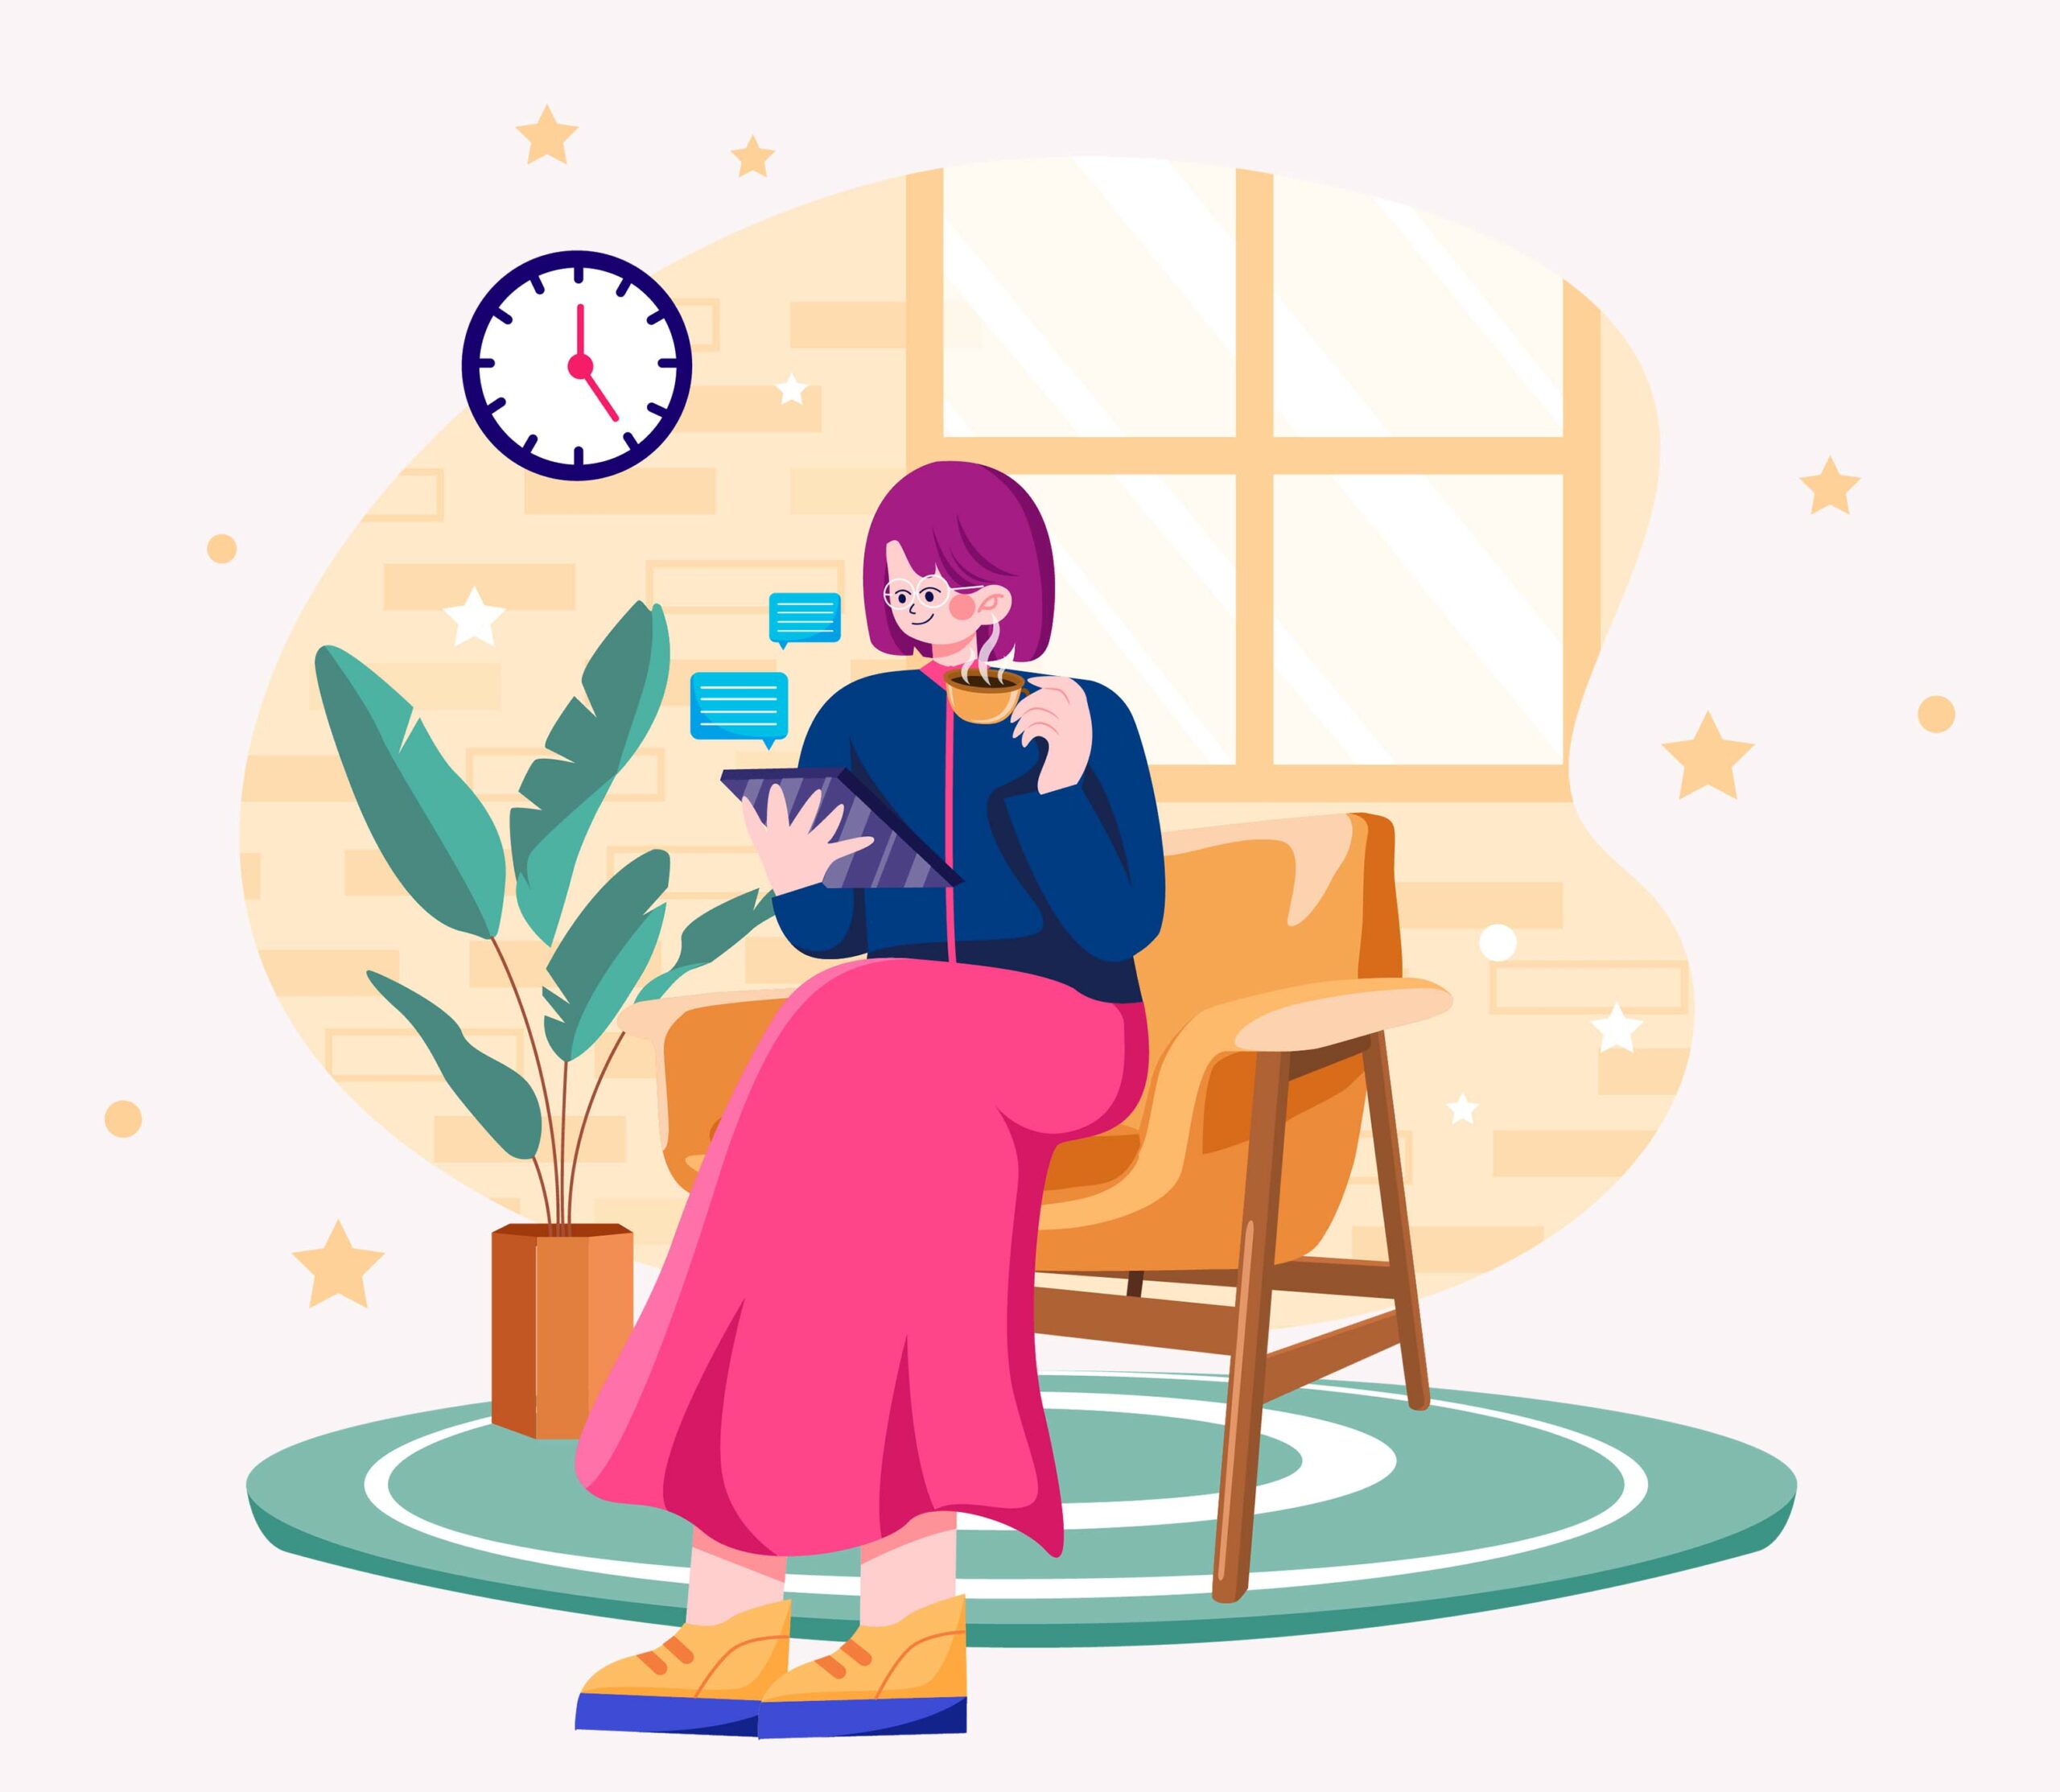 Eine Illustration, die eine Frau zeigt, die auf einem Sessel sitzt und sich etwas im Tablet anschaut. Dabei trinkt sie einen Kaffee